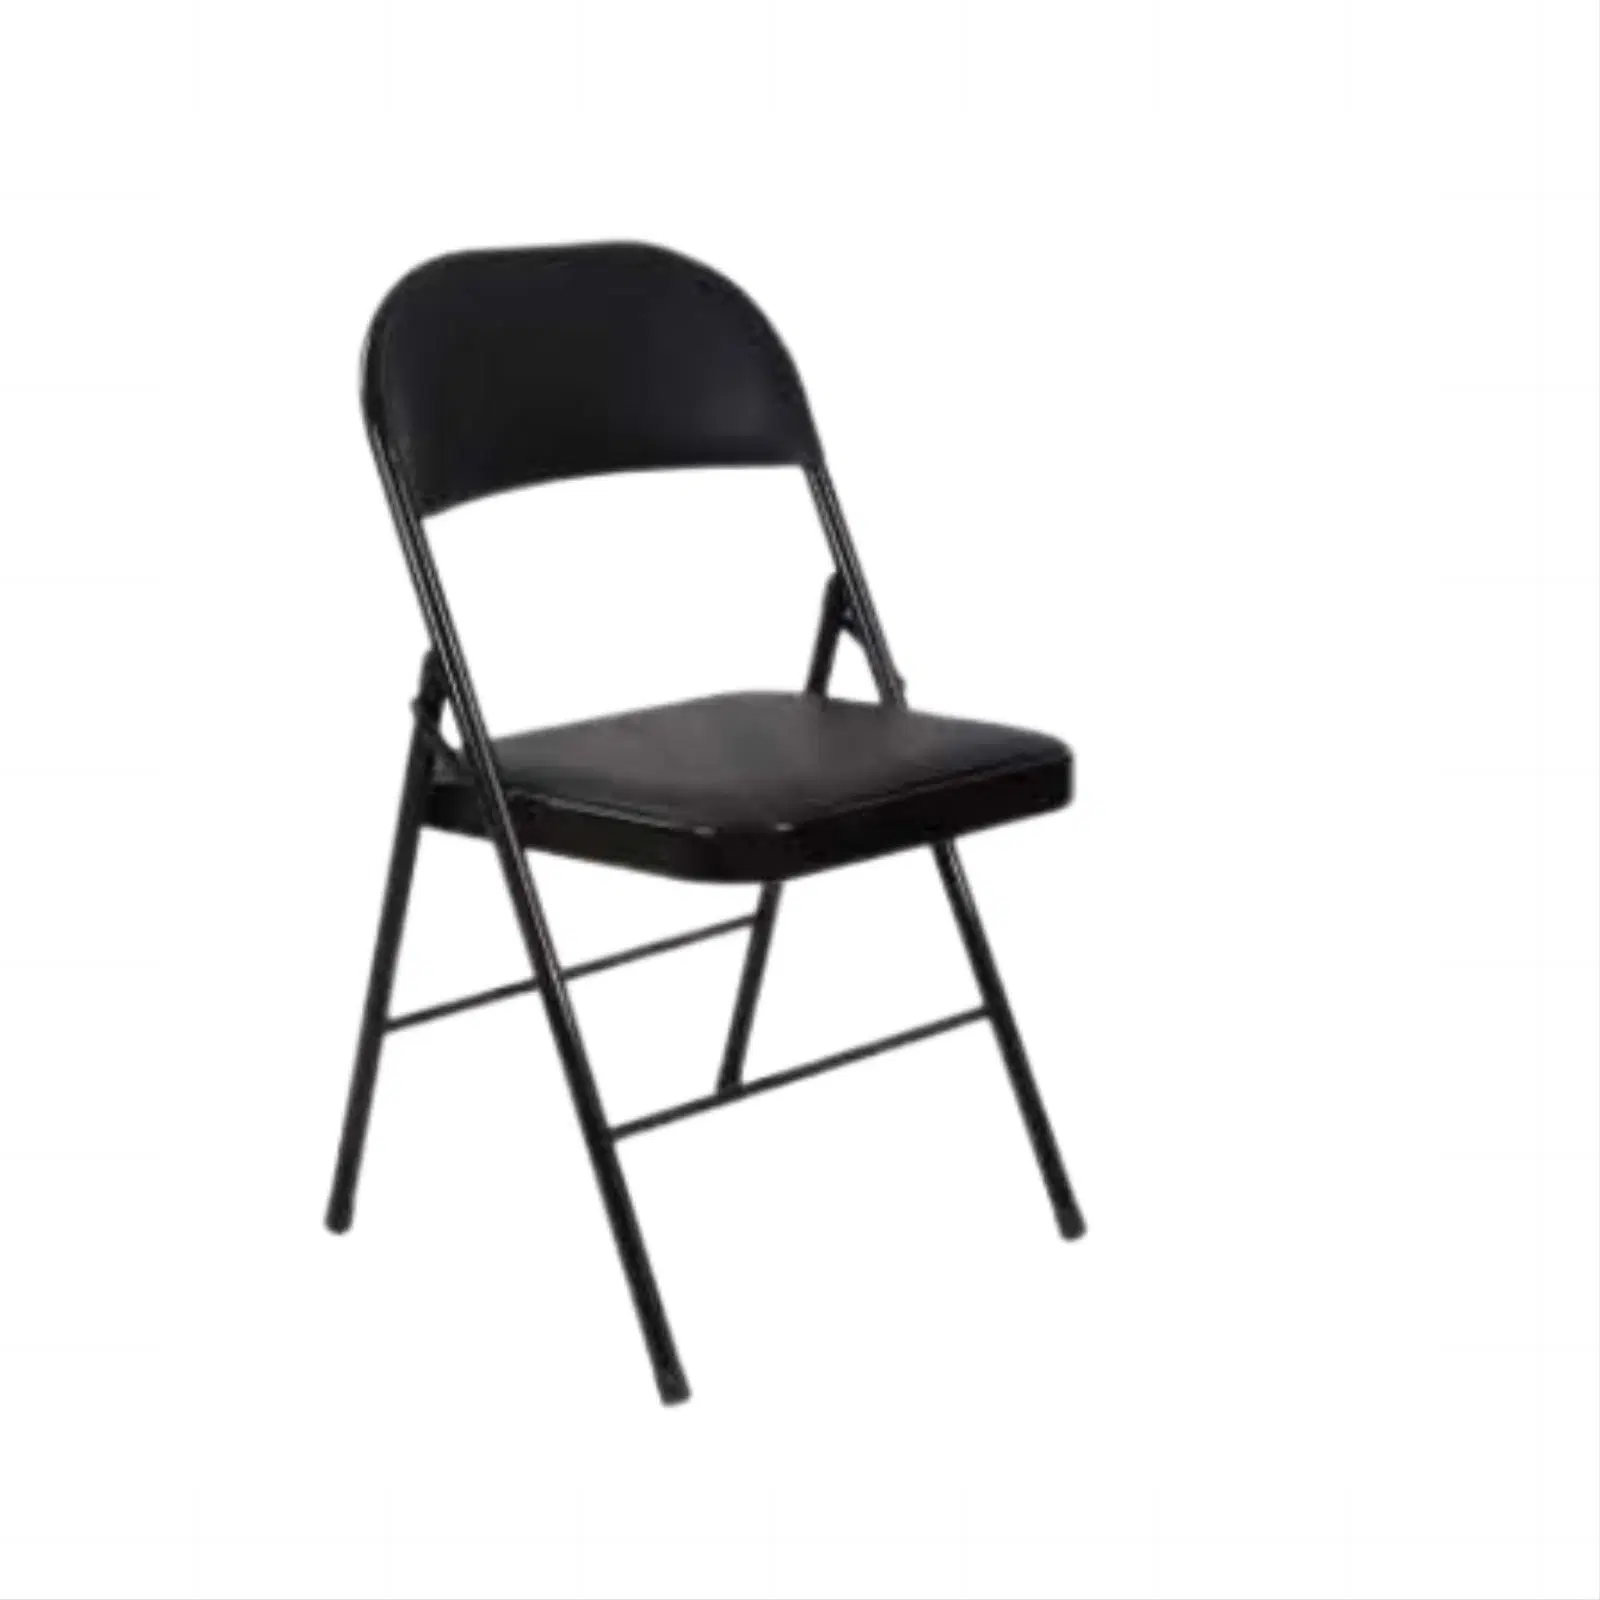 Black Fold Chair/Office Chair Modern Furniture